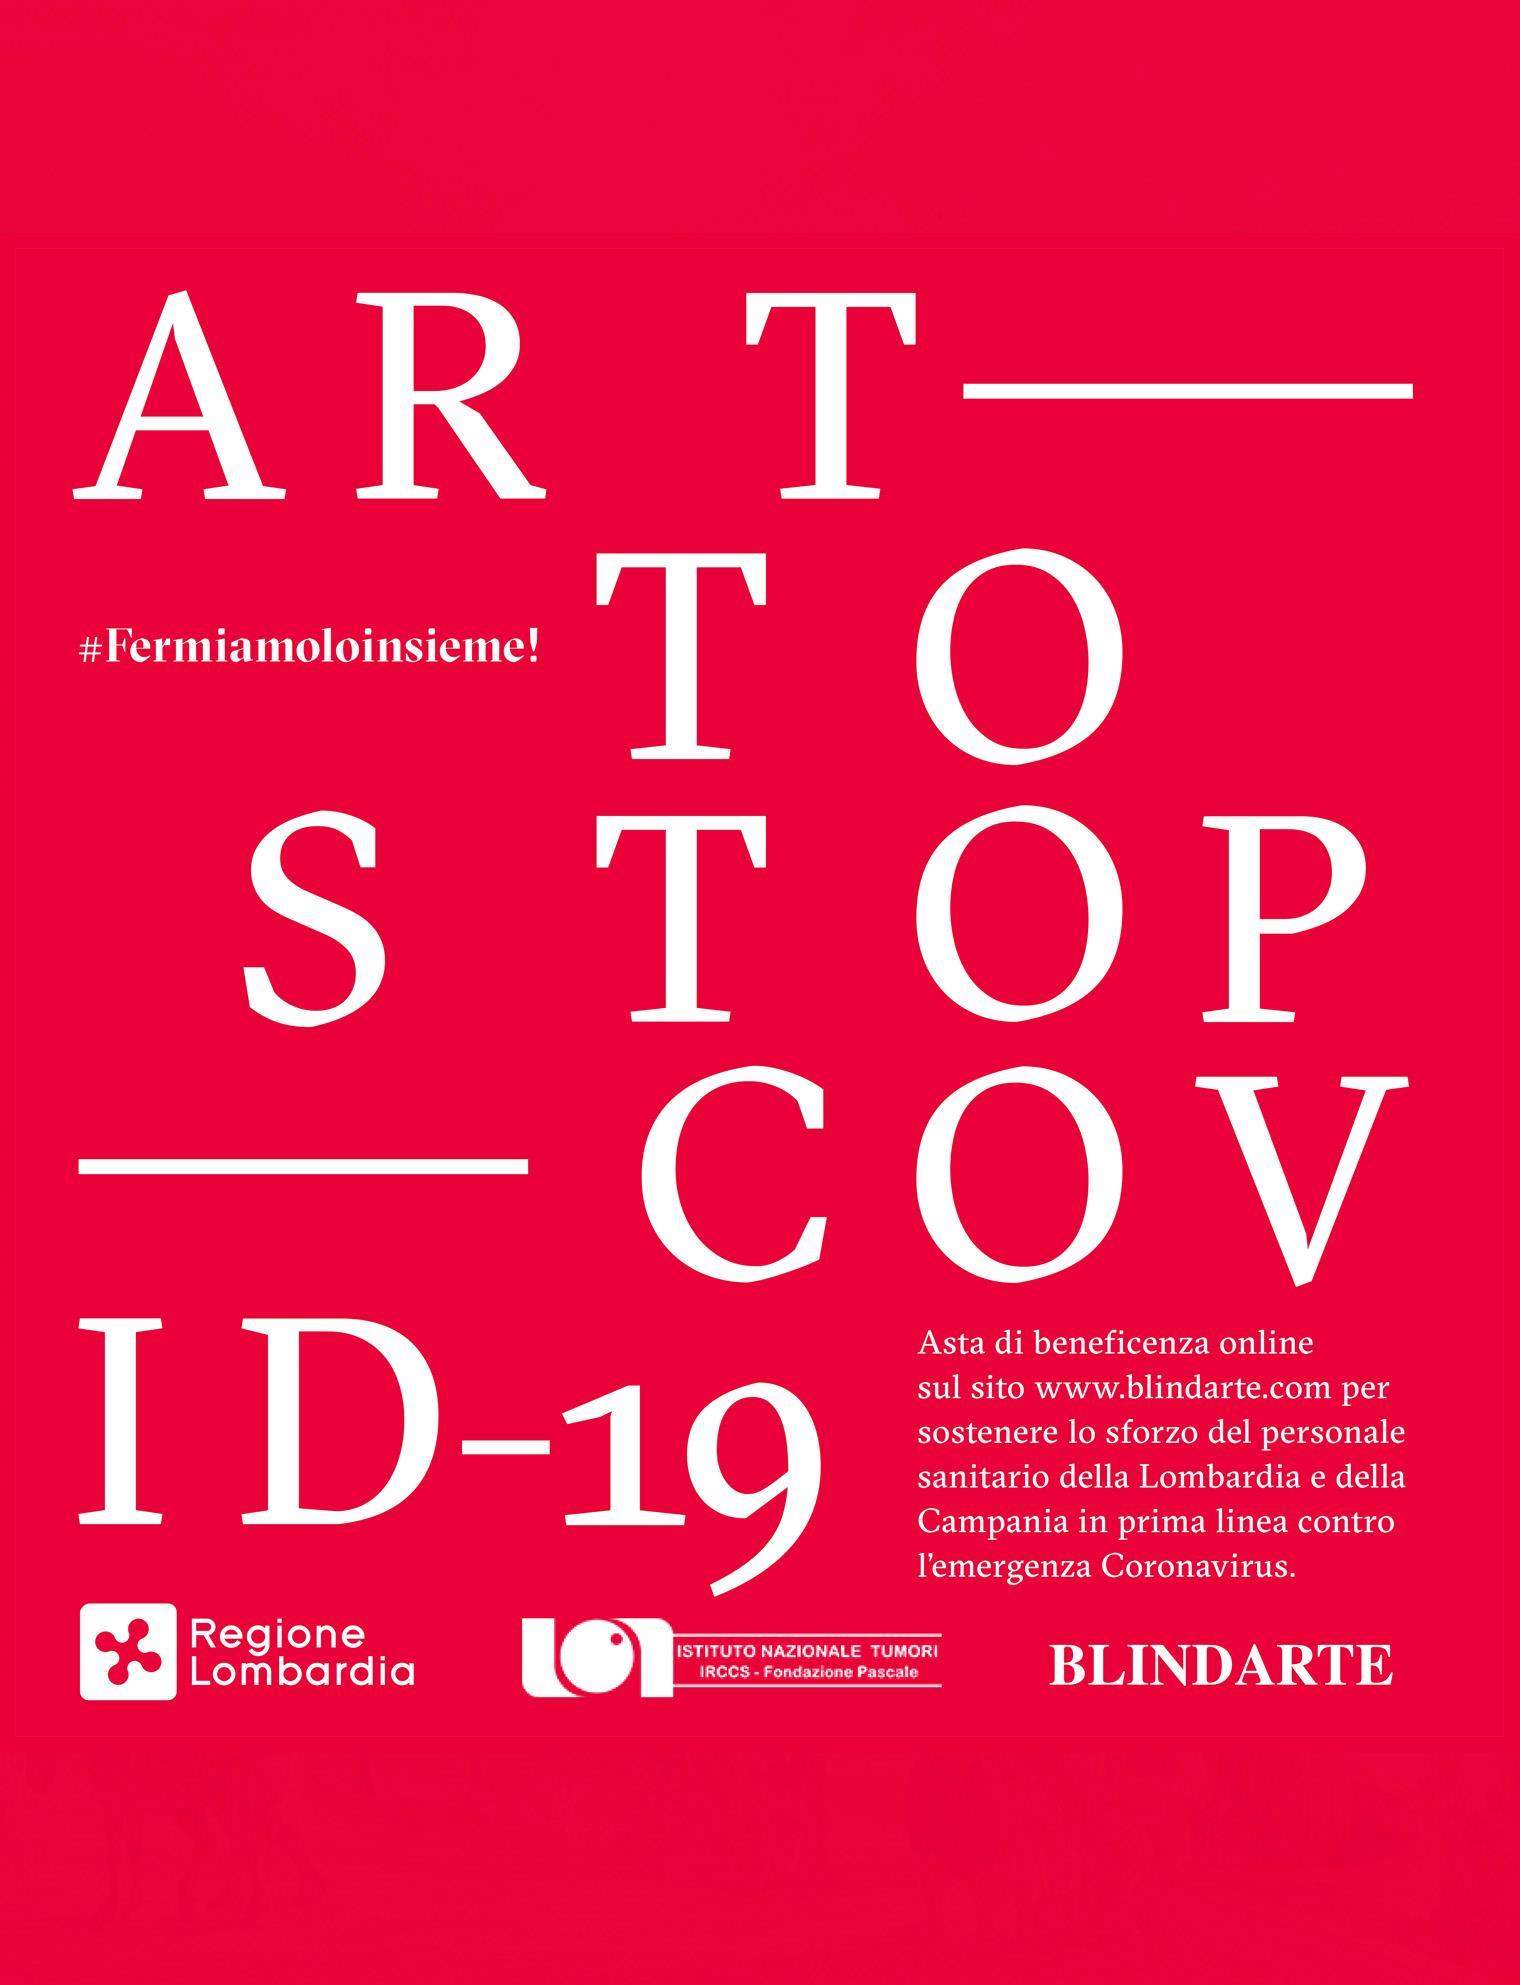 Blindarte propone una vendita di opere di importanti artisti italiani contemporanei per raccogliere fondi contro il Covid-19